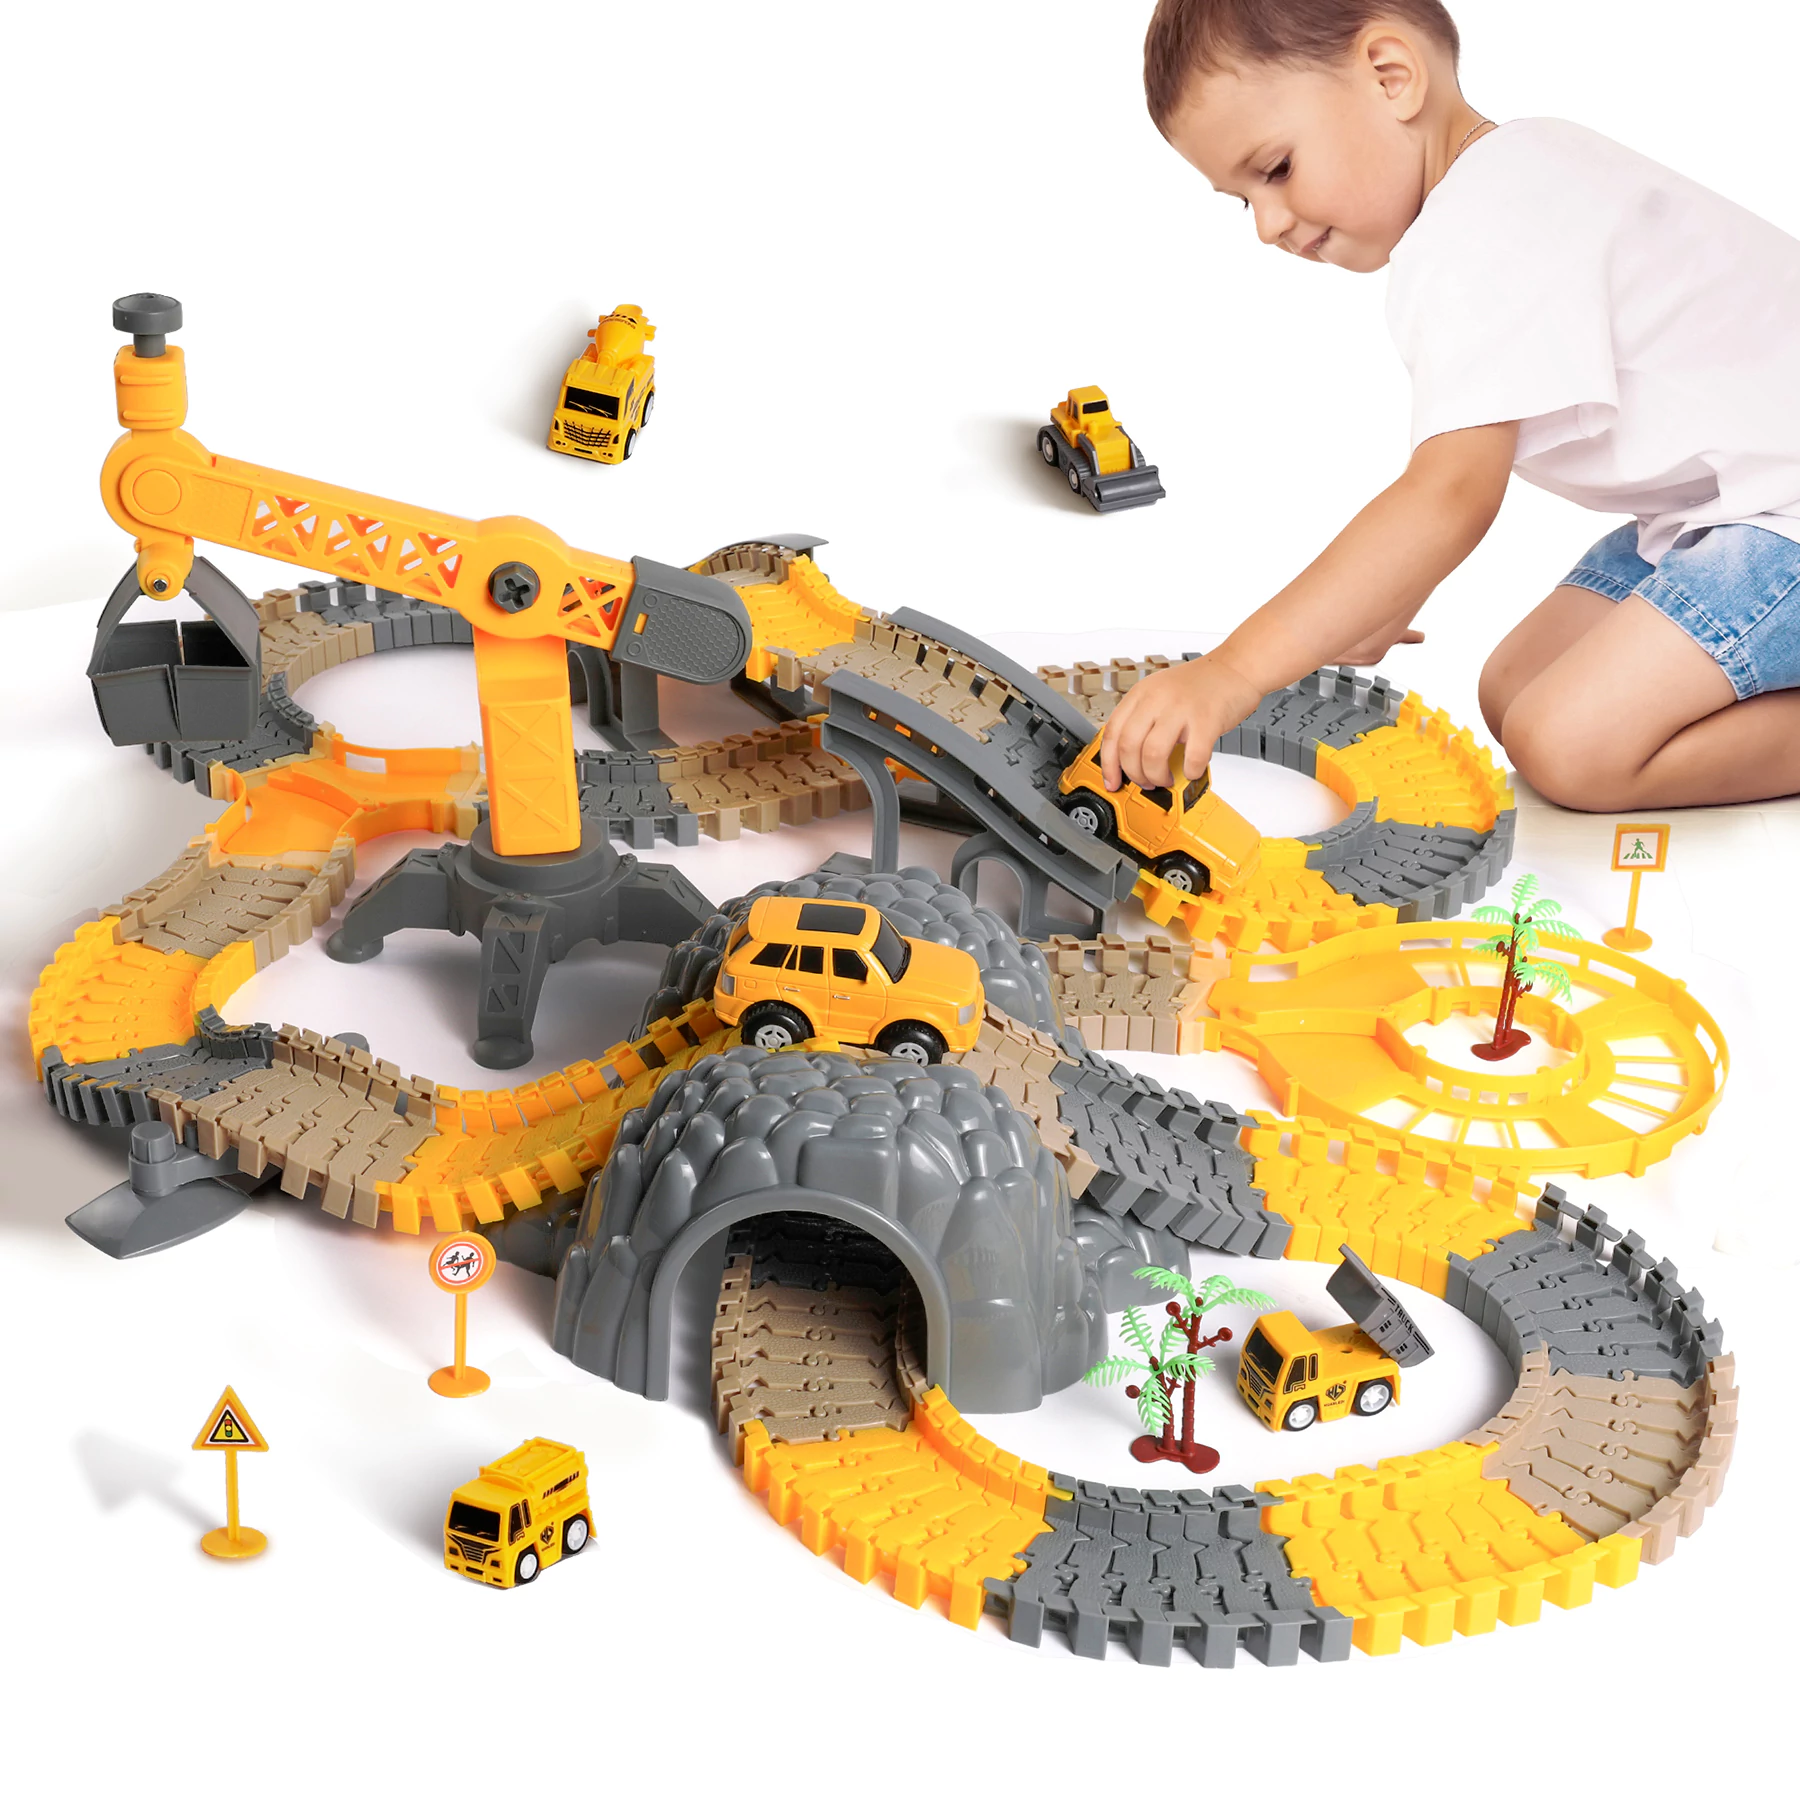 Tumama Construction Race Track Vehicle Toys